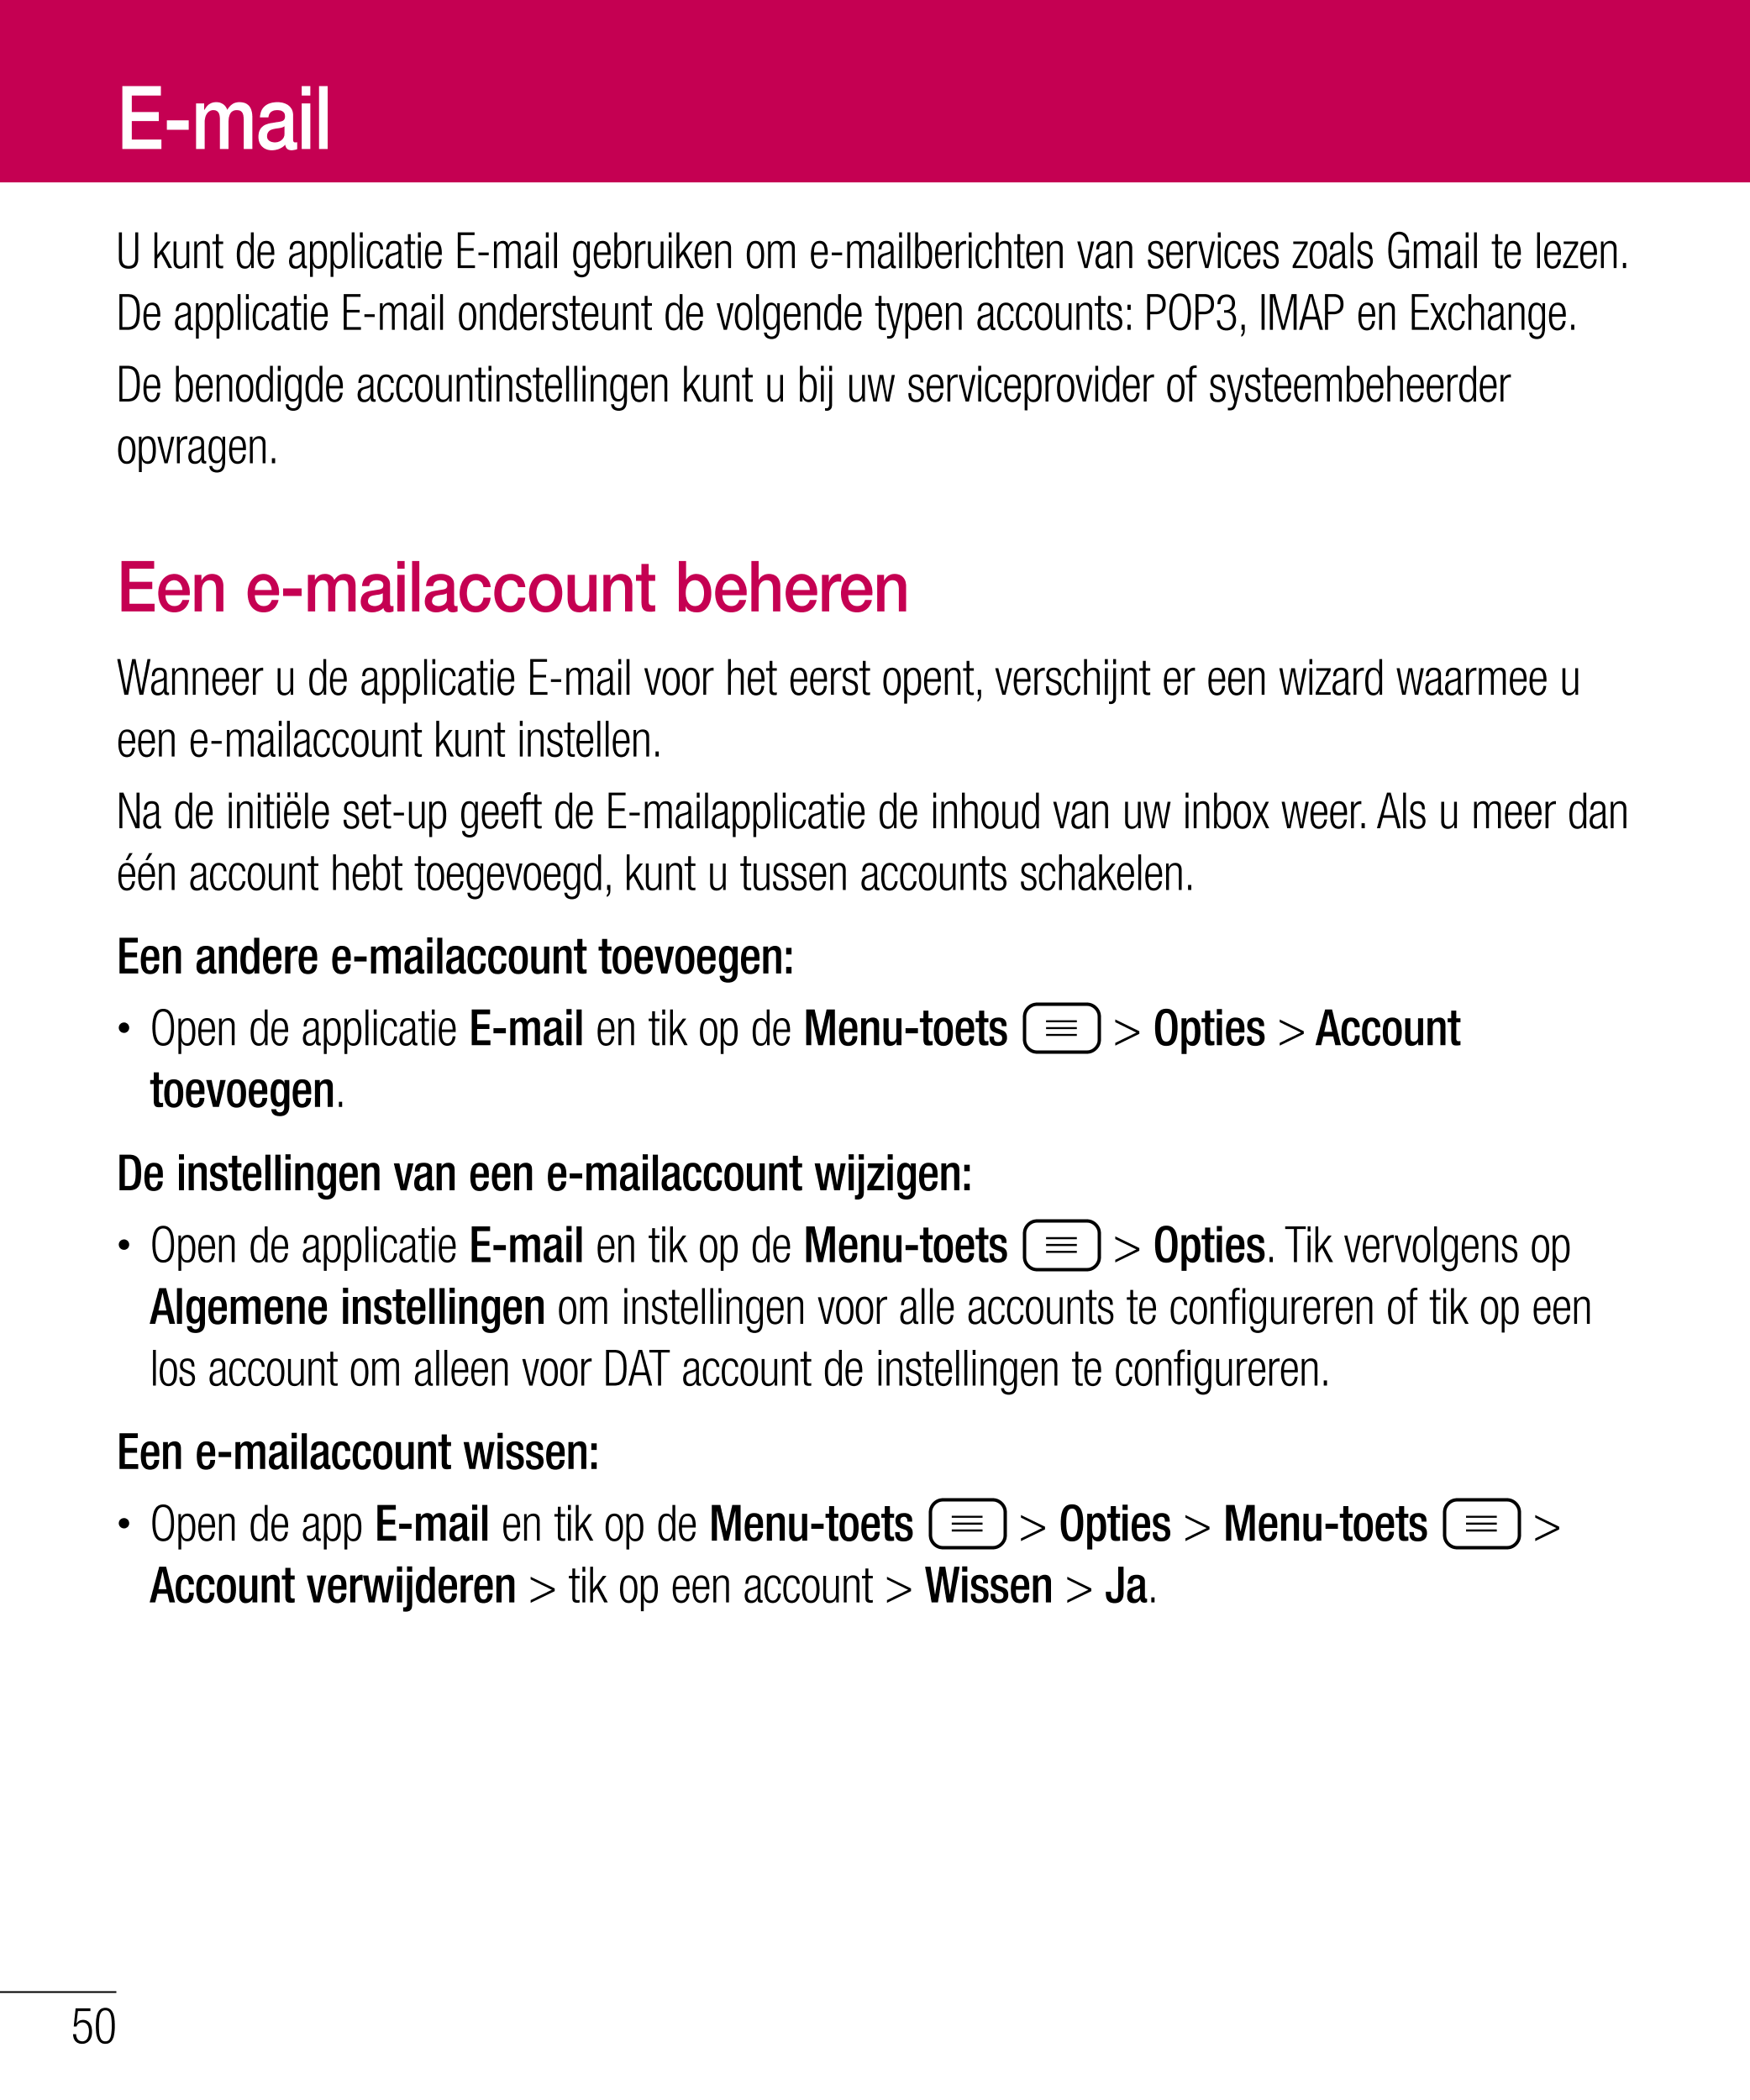 E-mail
U kunt de applicatie E-mail gebruiken om e-mailberichten van services zoals Gmail te lezen. 
De applicatie E-mail onderst